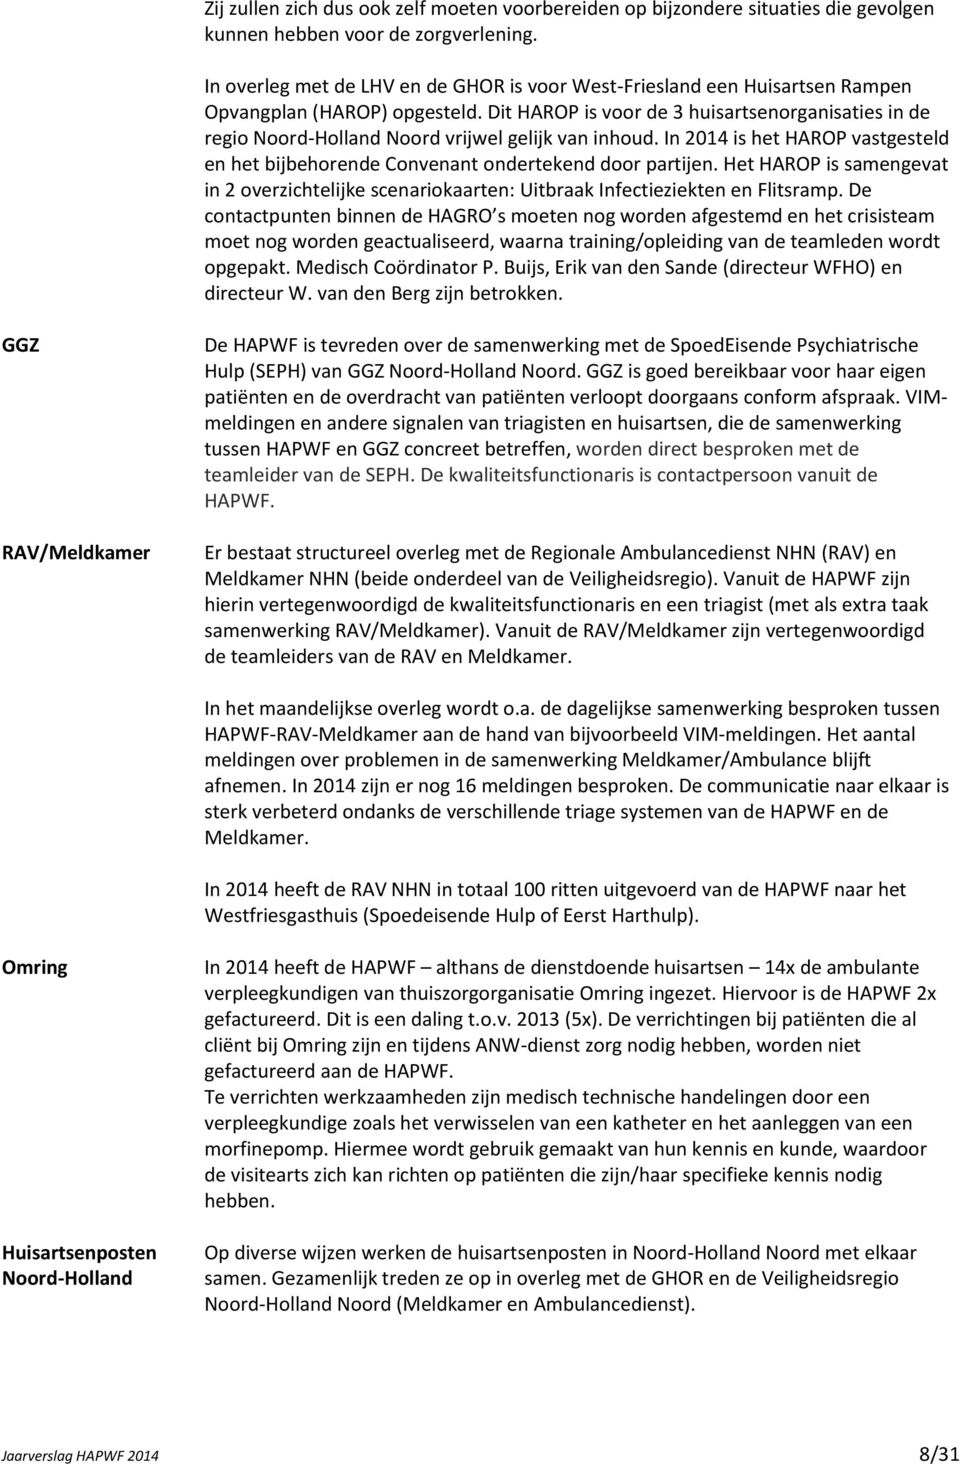 Dit HAROP is voor de 3 huisartsenorganisaties in de regio Noord-Holland Noord vrijwel gelijk van inhoud. In 2014 is het HAROP vastgesteld en het bijbehorende Convenant ondertekend door partijen.